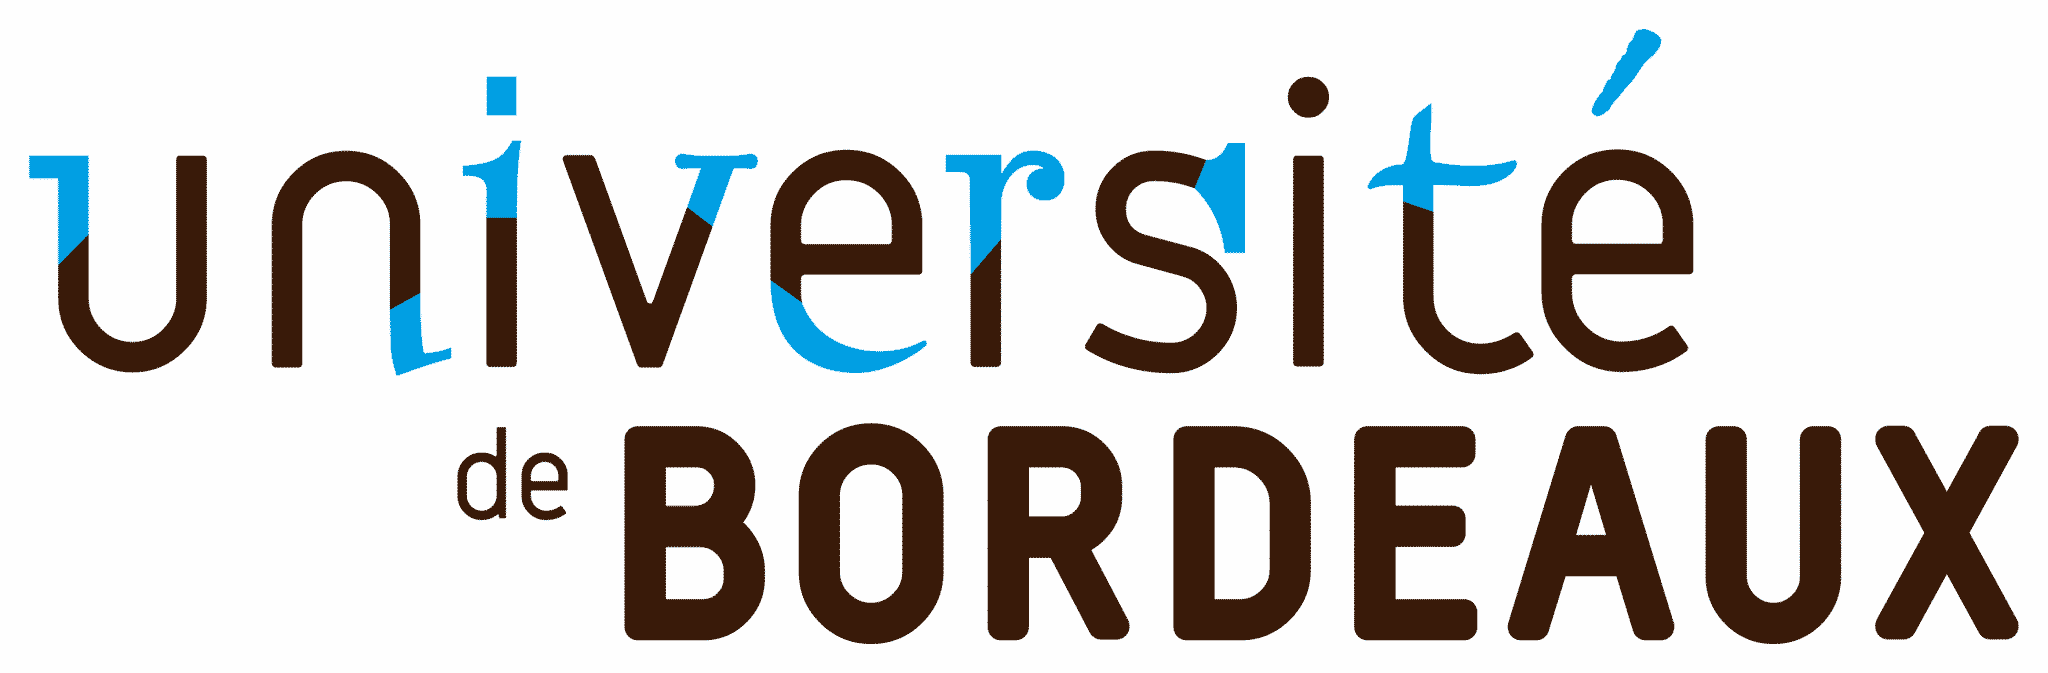 Universite-Bordeaux-logo